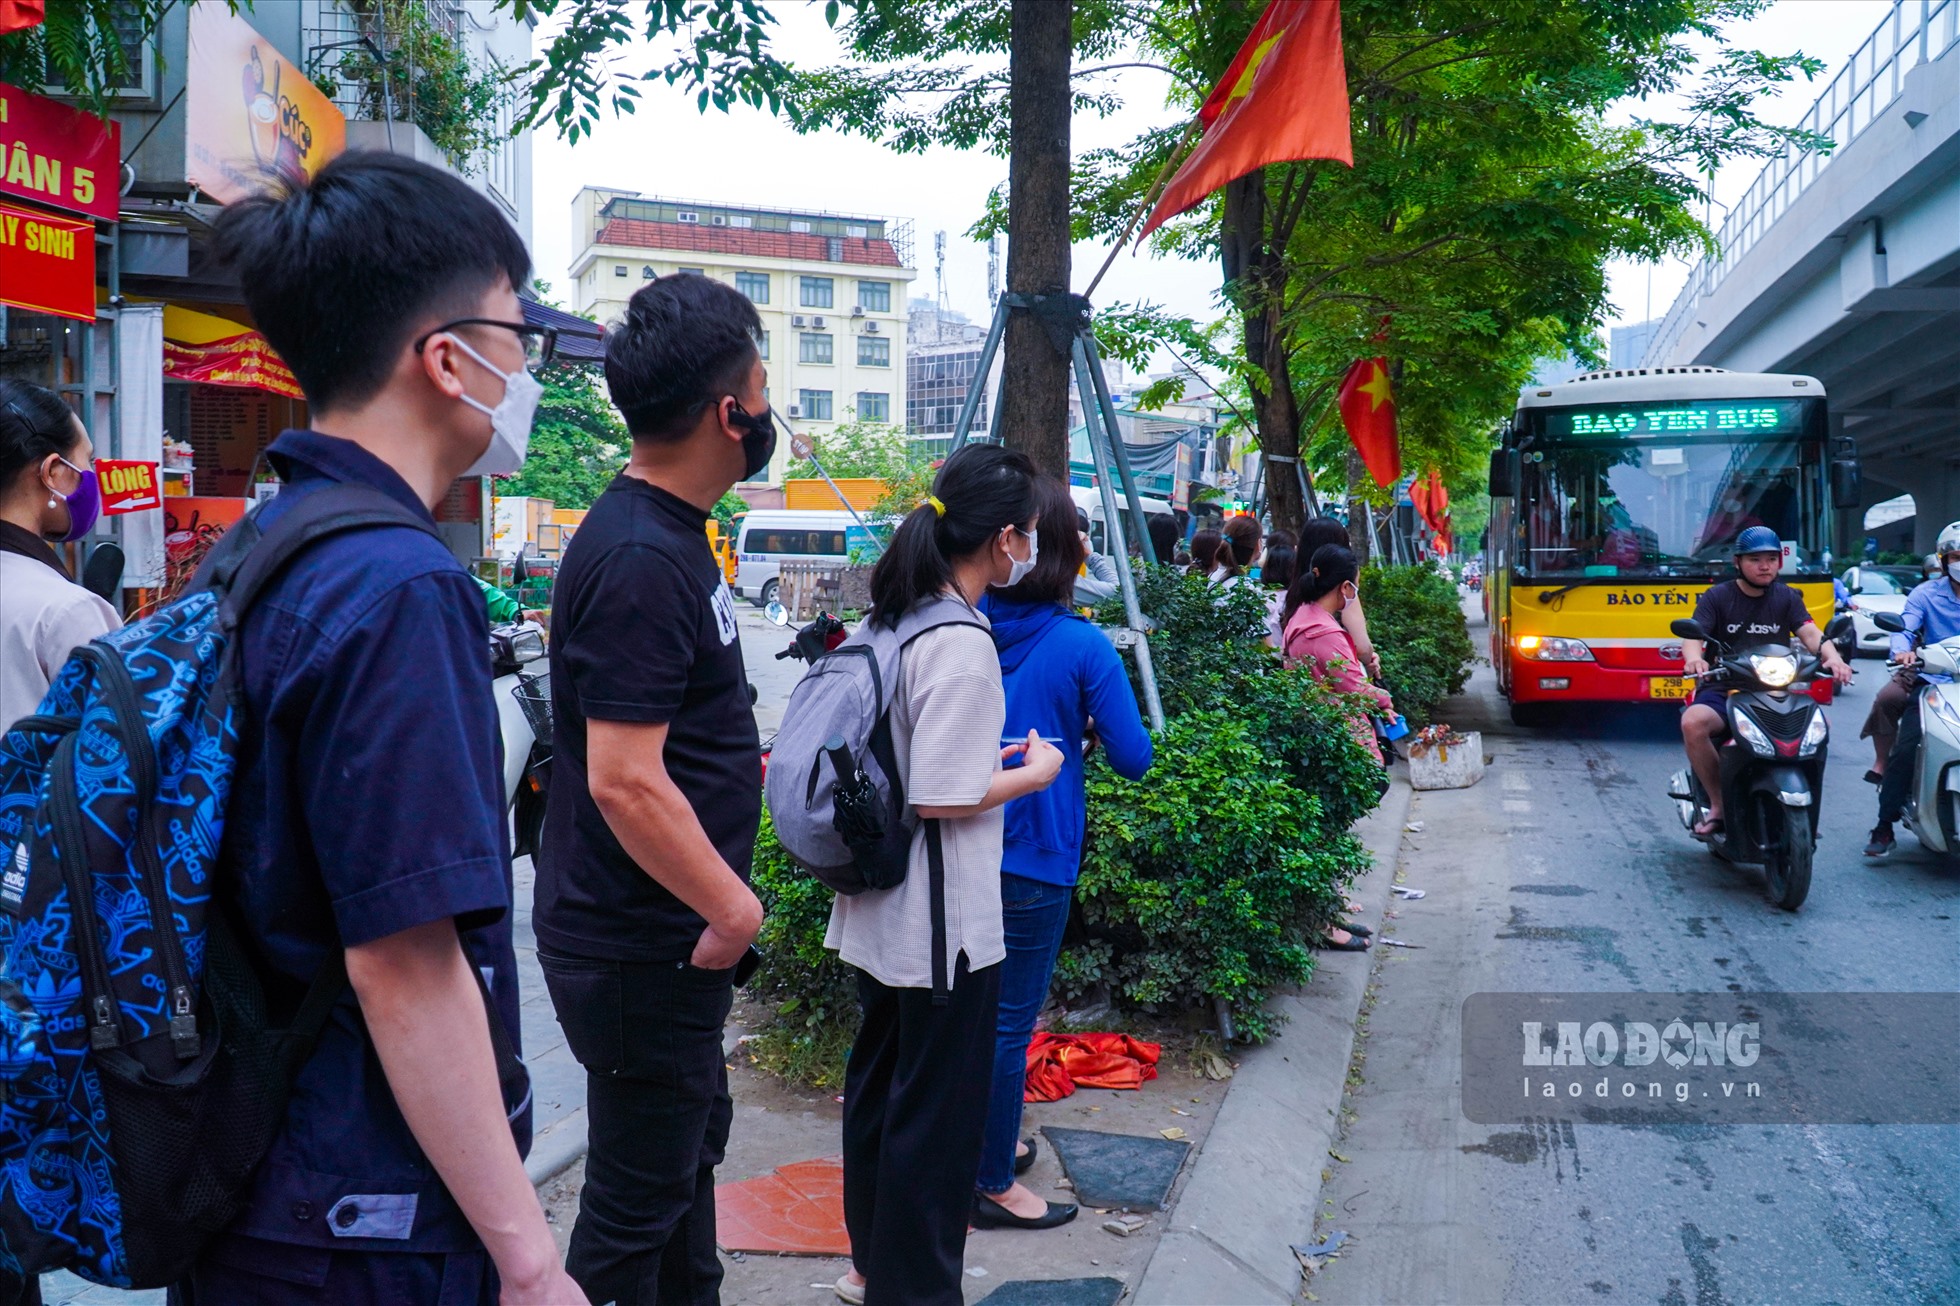 Tại một điểm xe buýt nằm trên đường Phạm Văn Đồng (Bắc Từ Liêm, Hà Nội), nhiều người dân vẫn phải xếp hàng dài chờ đợi. Do lượng người quá đông nên một số xe buýt đã không còn chỗ, vì vậy nhiều người phải chờ đến chuyến sau.